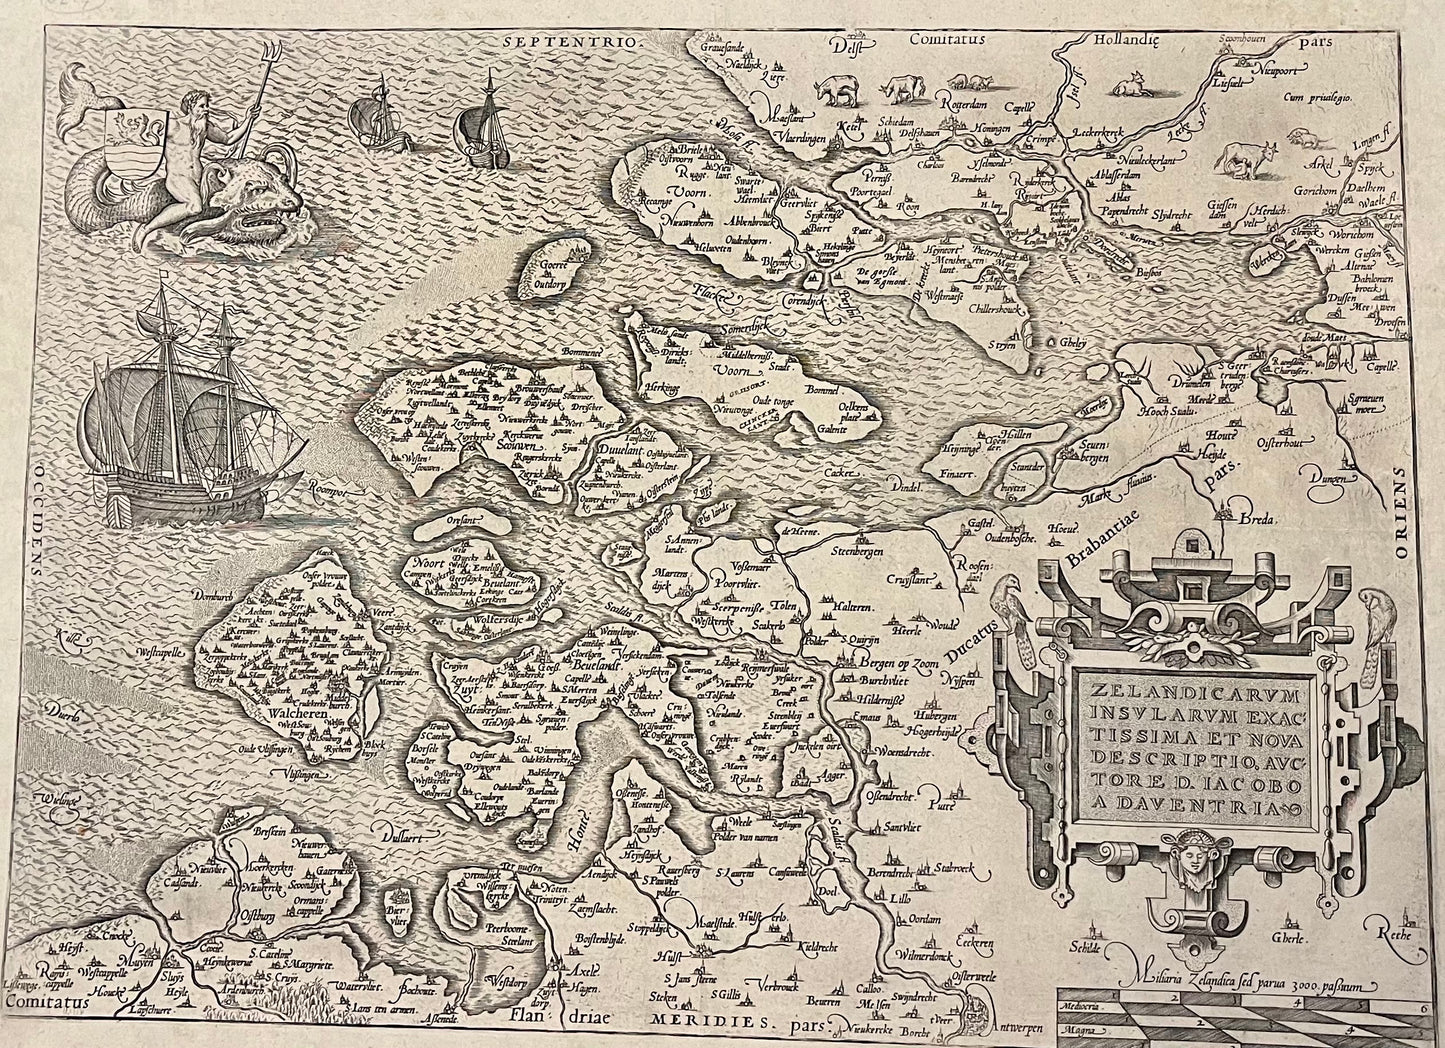 Ortelius - 1574 - Zeeland - "Zelandicarum Insularum exactissima et nova descriptio,  Auctore D. Iacobbo a Deventria"